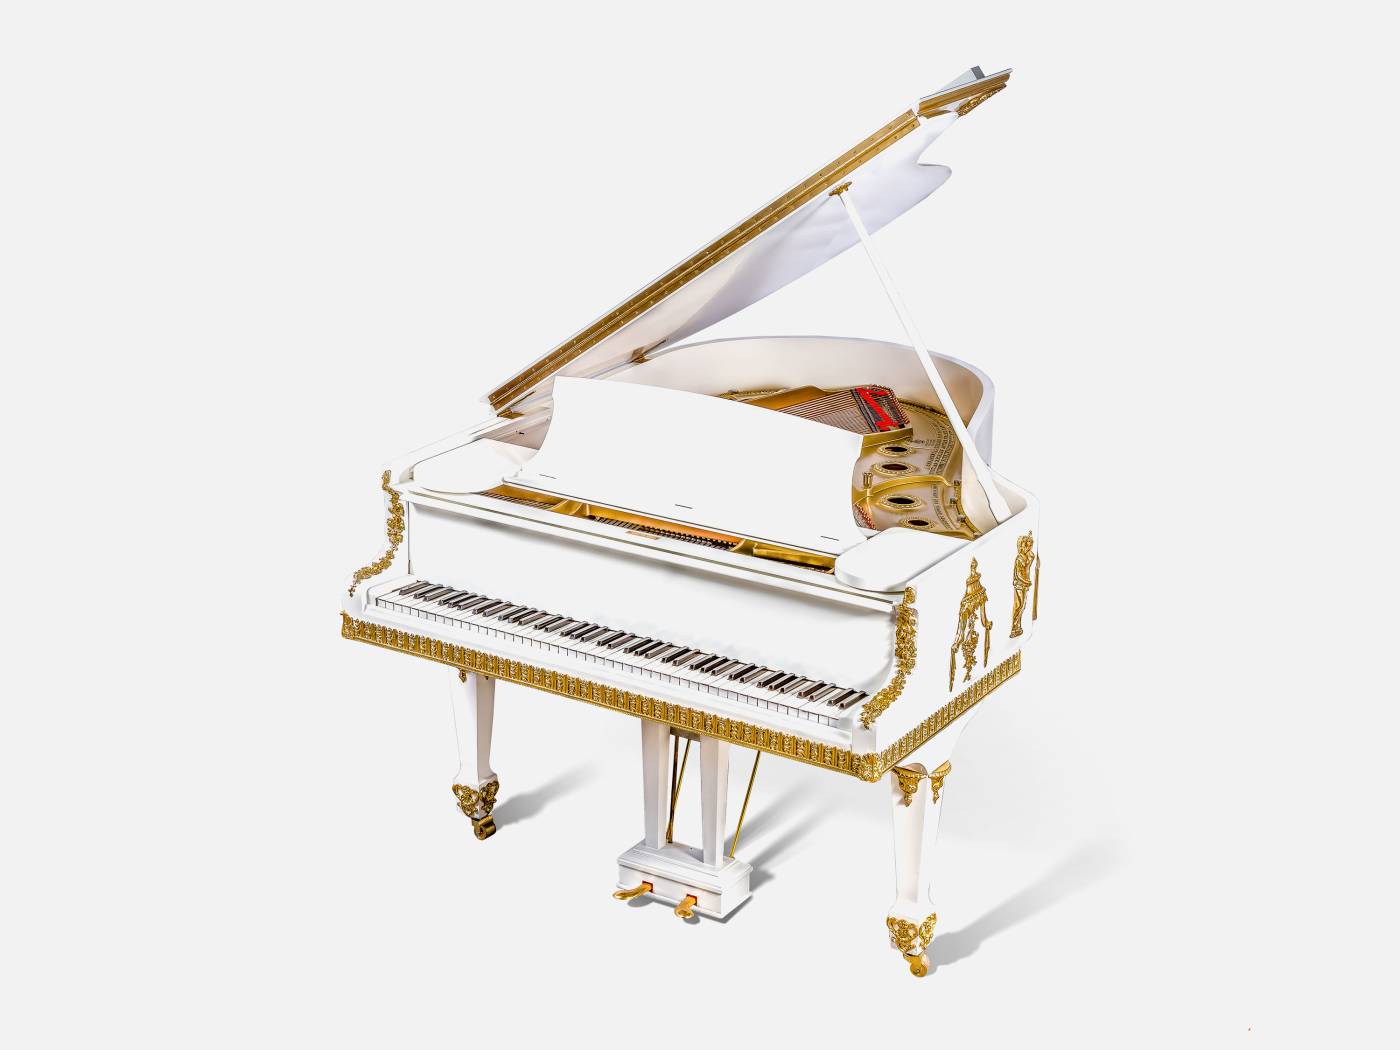 ART. 1095 – C.G. Capelletti Italian Luxury Classic Pianos. Made in Italy classic interior design